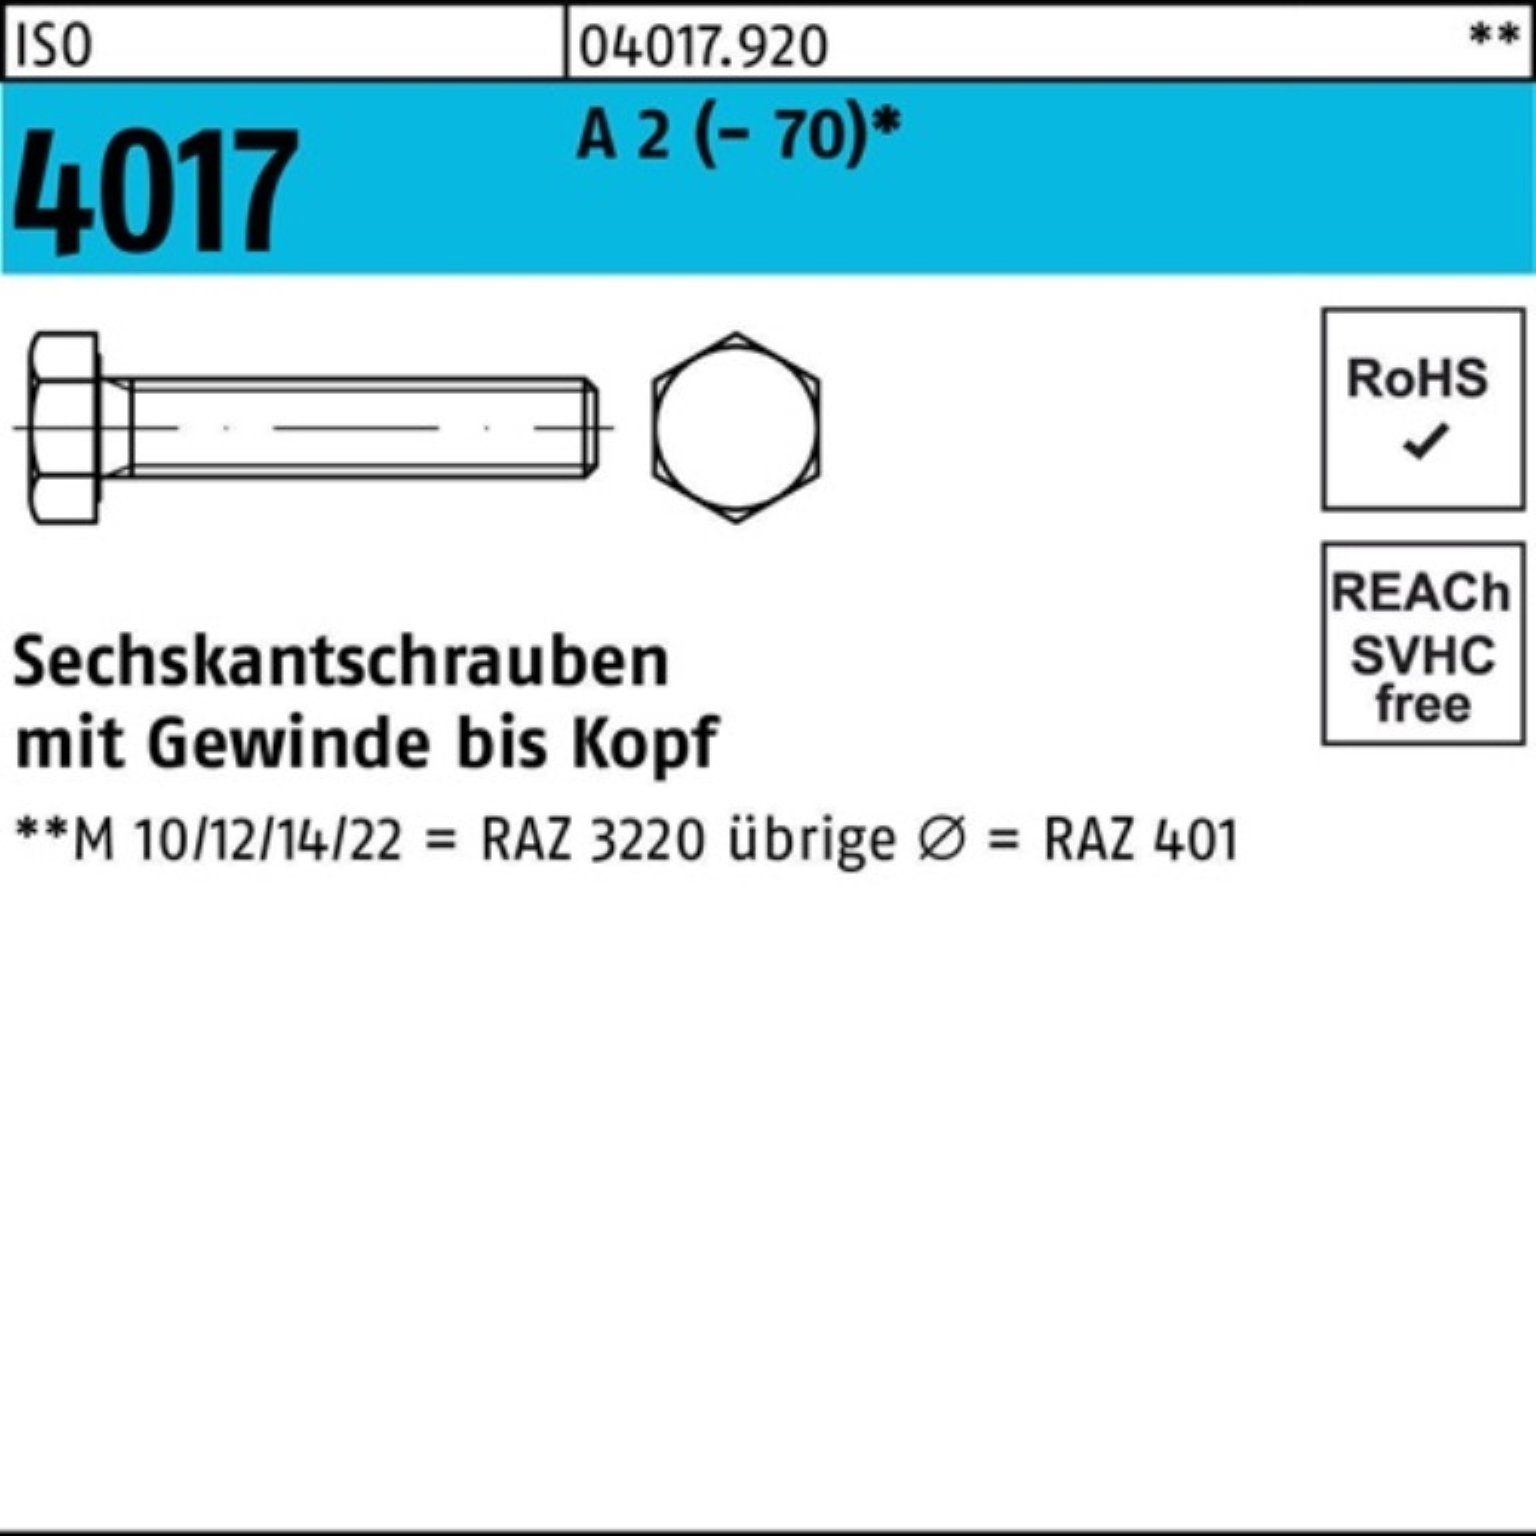 Bufab Sechskantschraube 100er Pack Sechskantschraube 4017 A VG 80 25 ISO Stück 2 (70) M20x